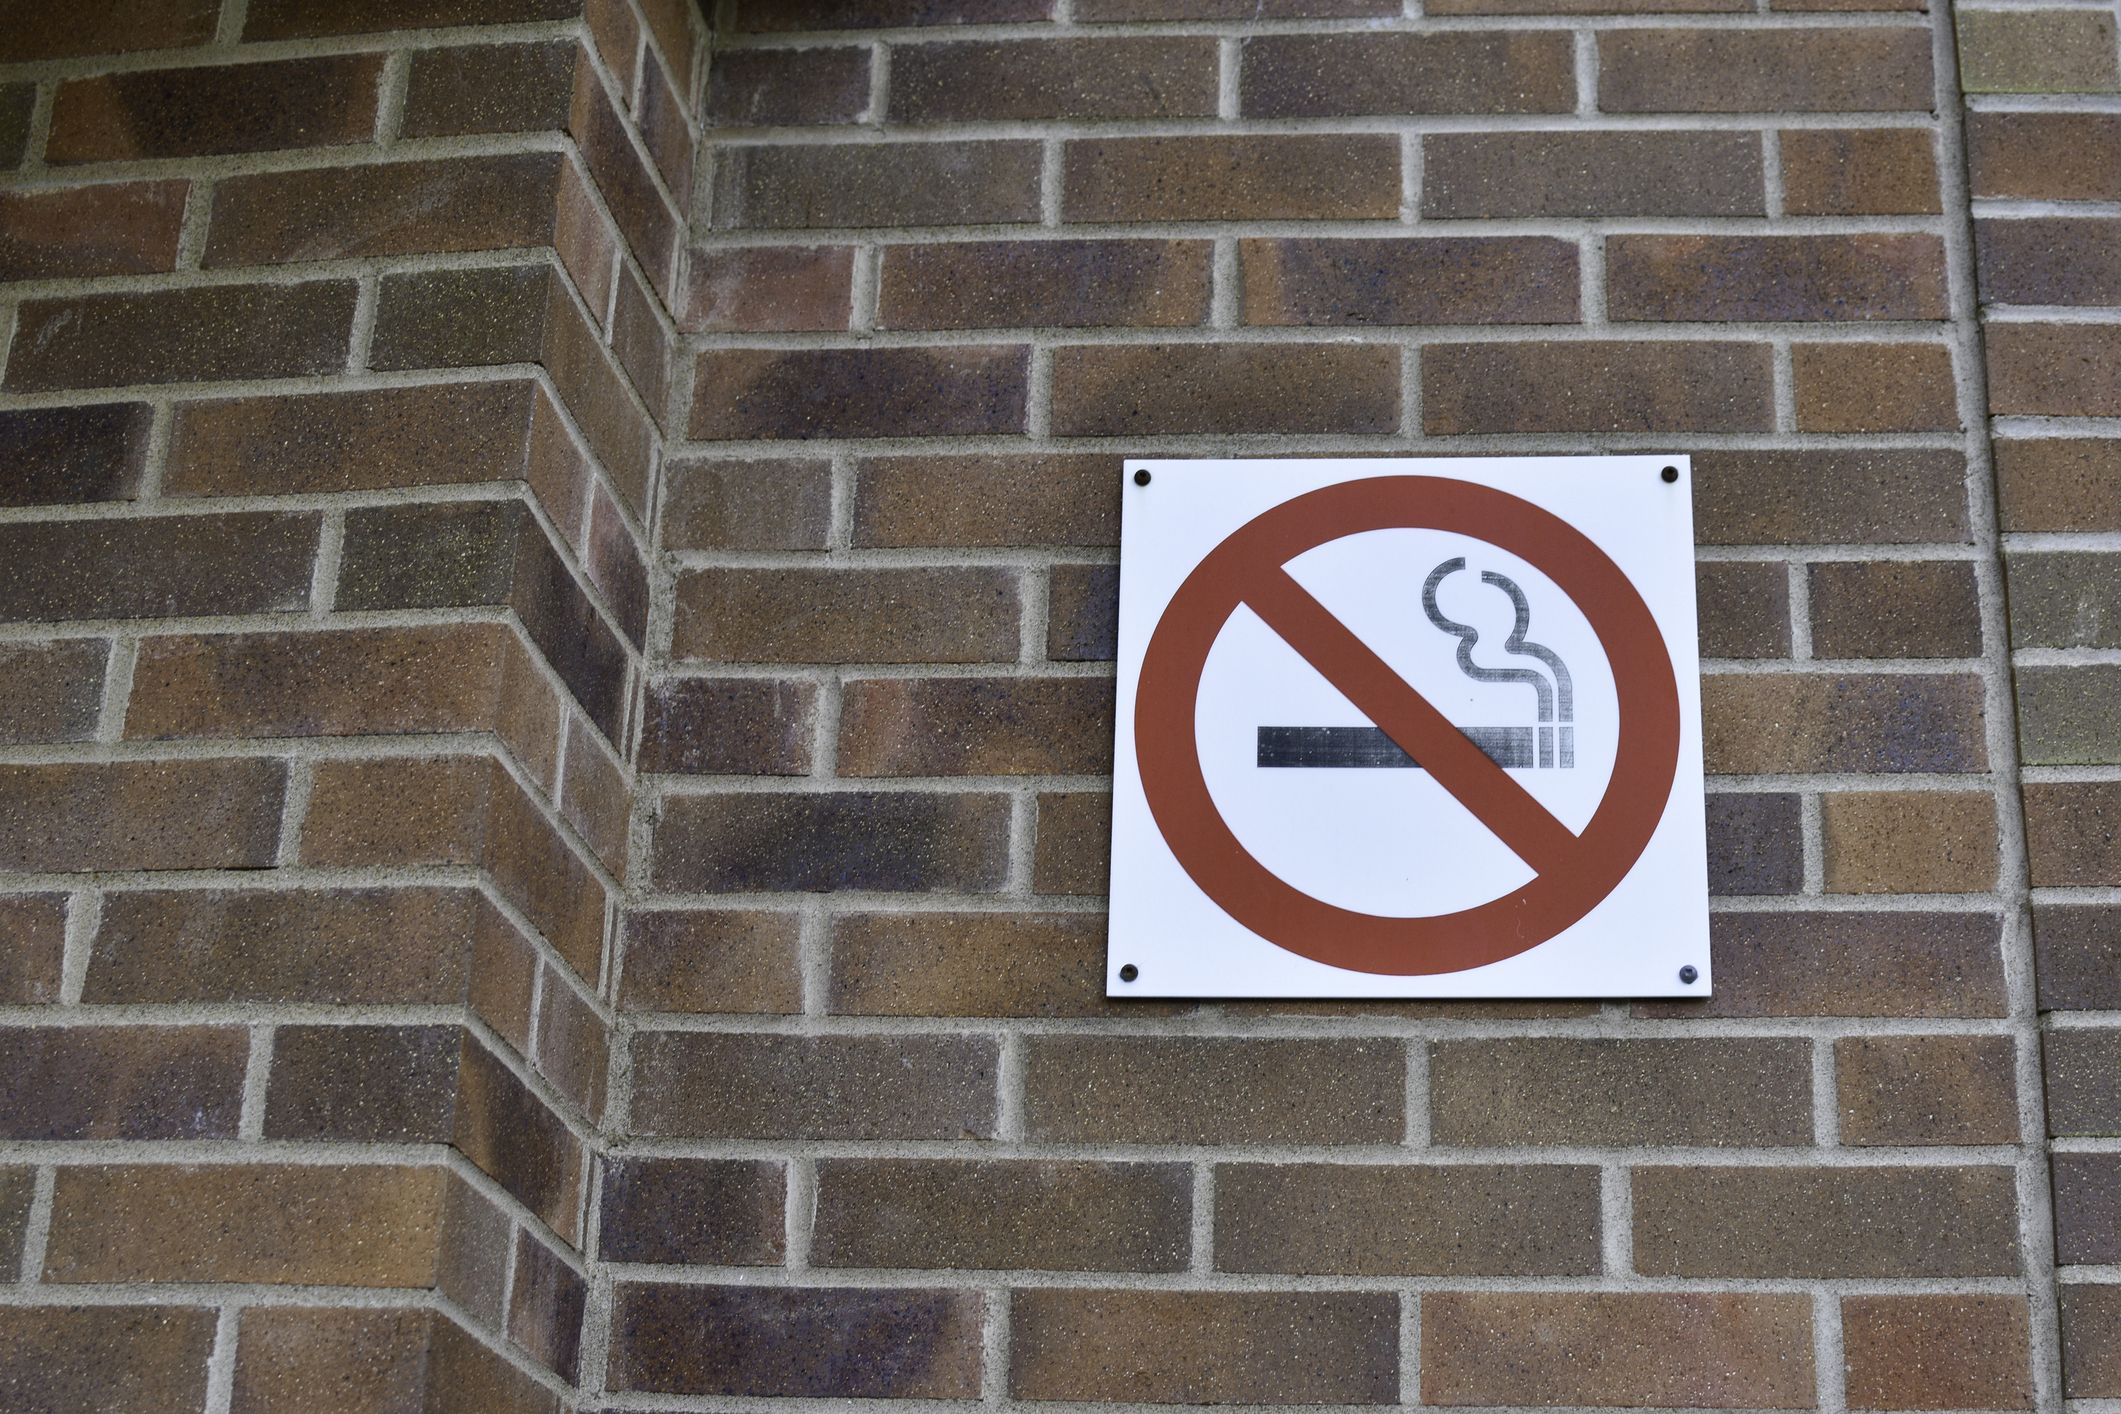 No smoking sign on a brick wall